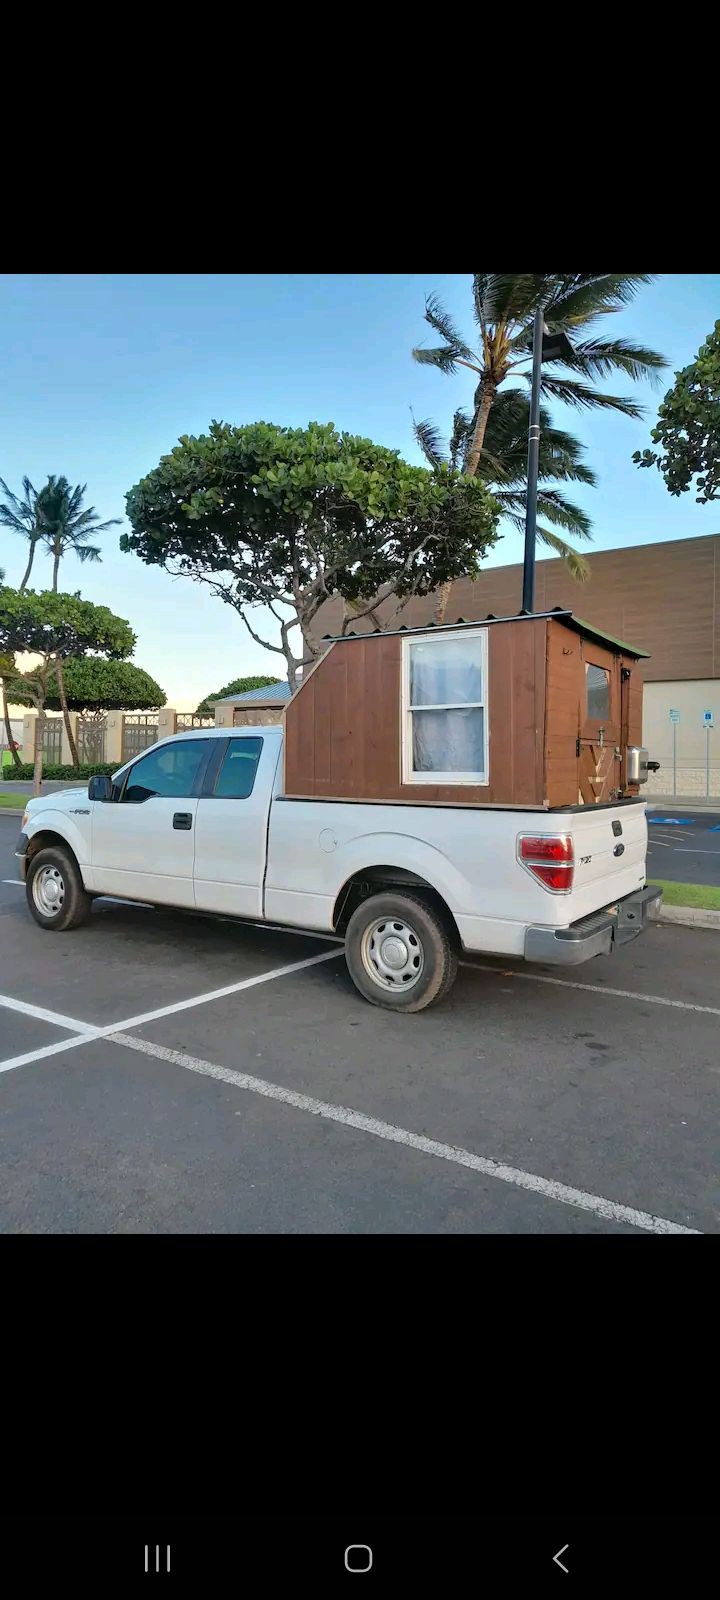 Beach Camper Truck